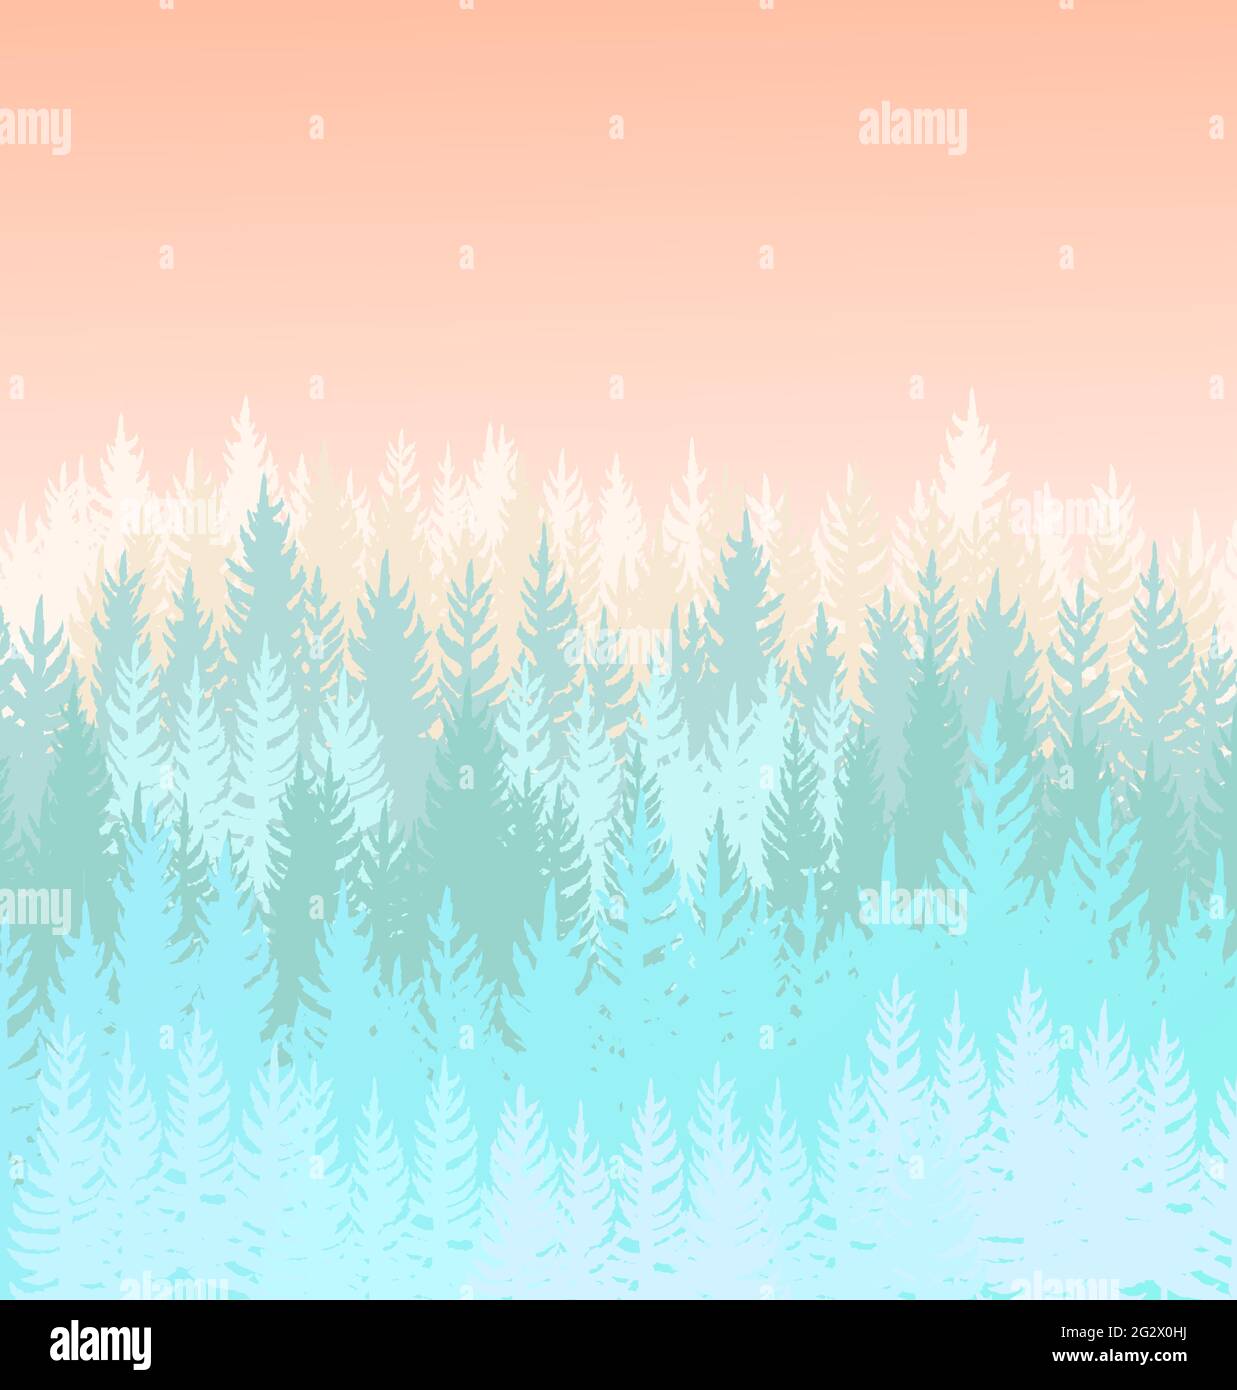 Waldhintergrund. Silhouette Panorama. Landschaft mit Bäumen. Nadelbäume. Wunderschöne Aussicht auf den Sonnenuntergang. Winterszene. Illustration Vektorgrafiken Stock Vektor